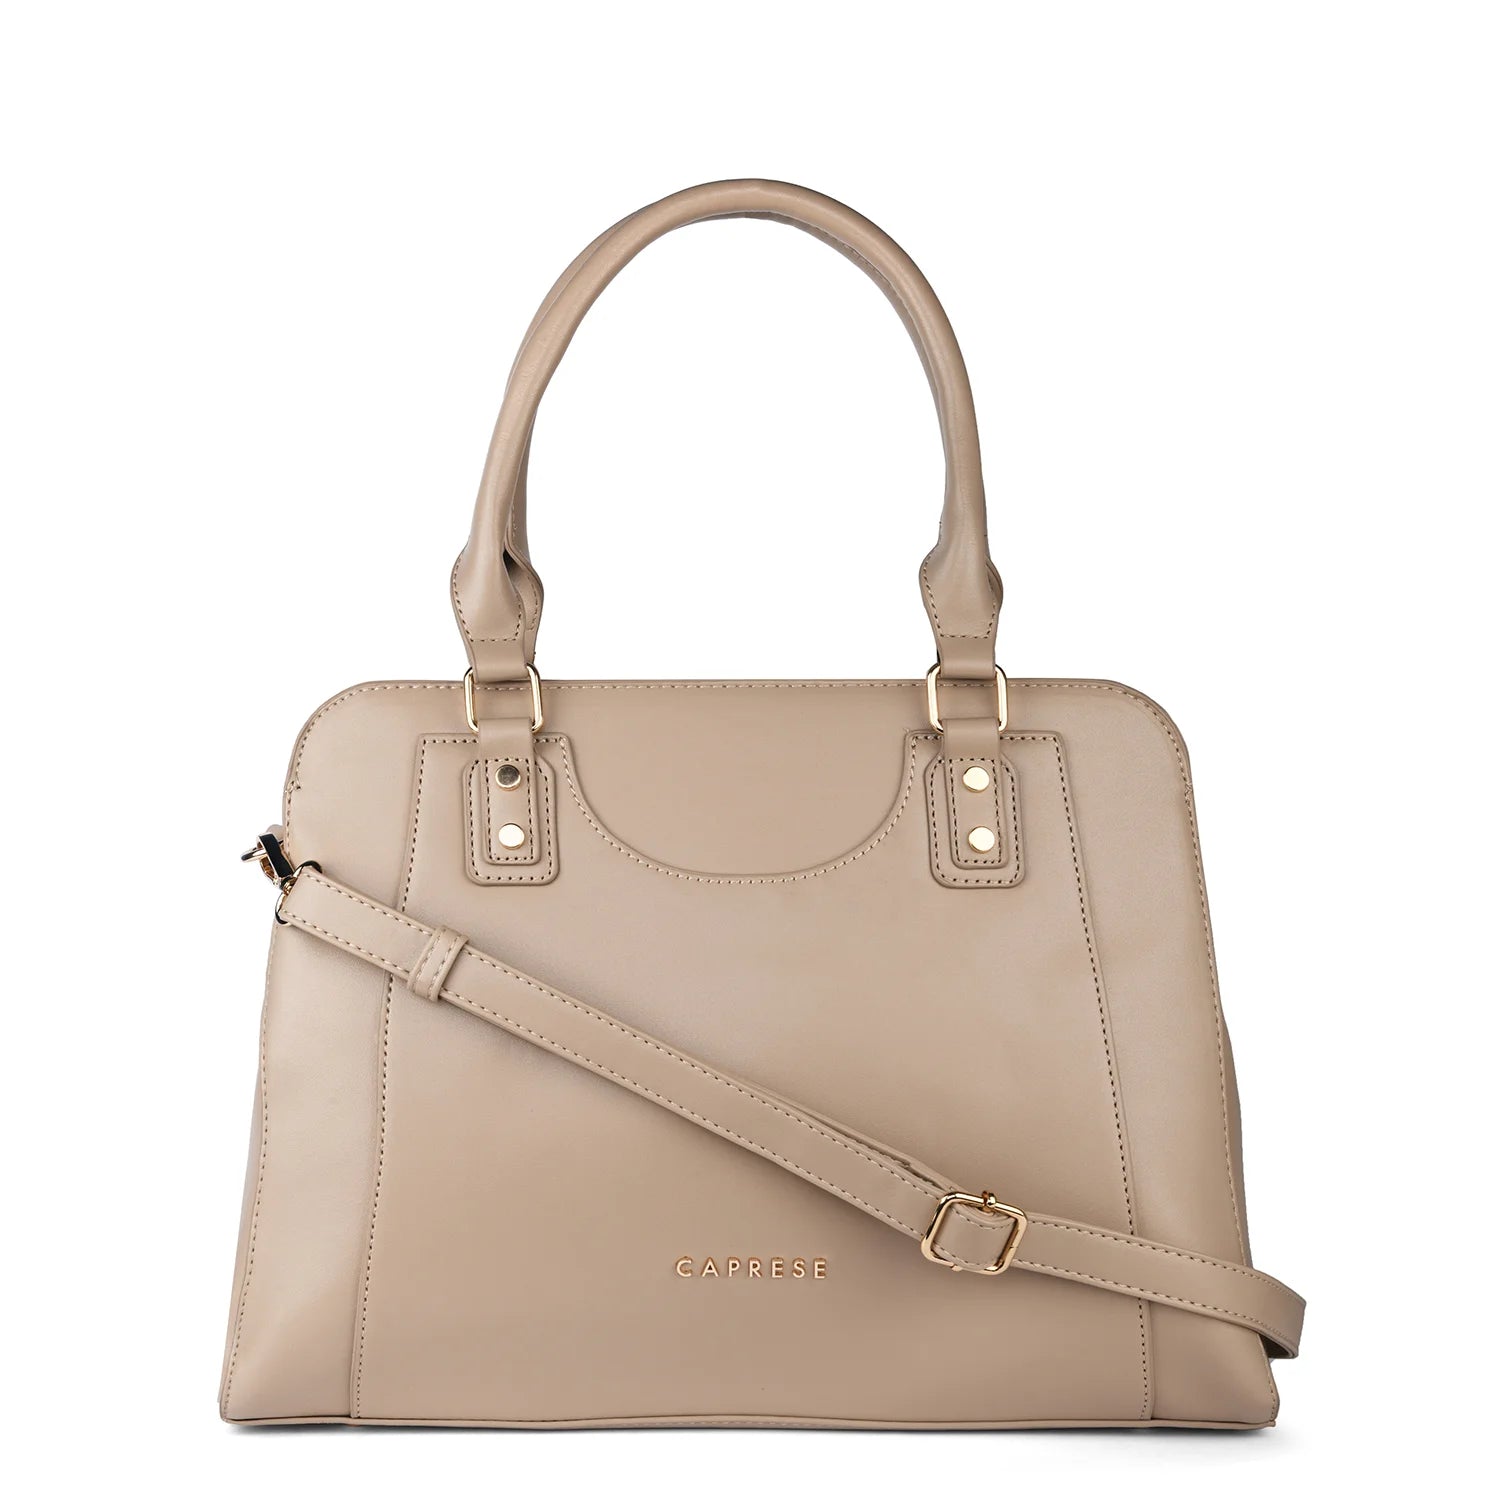 Buy Caprese PETAL women's Sling Bag (SADDLE) at Amazon.in